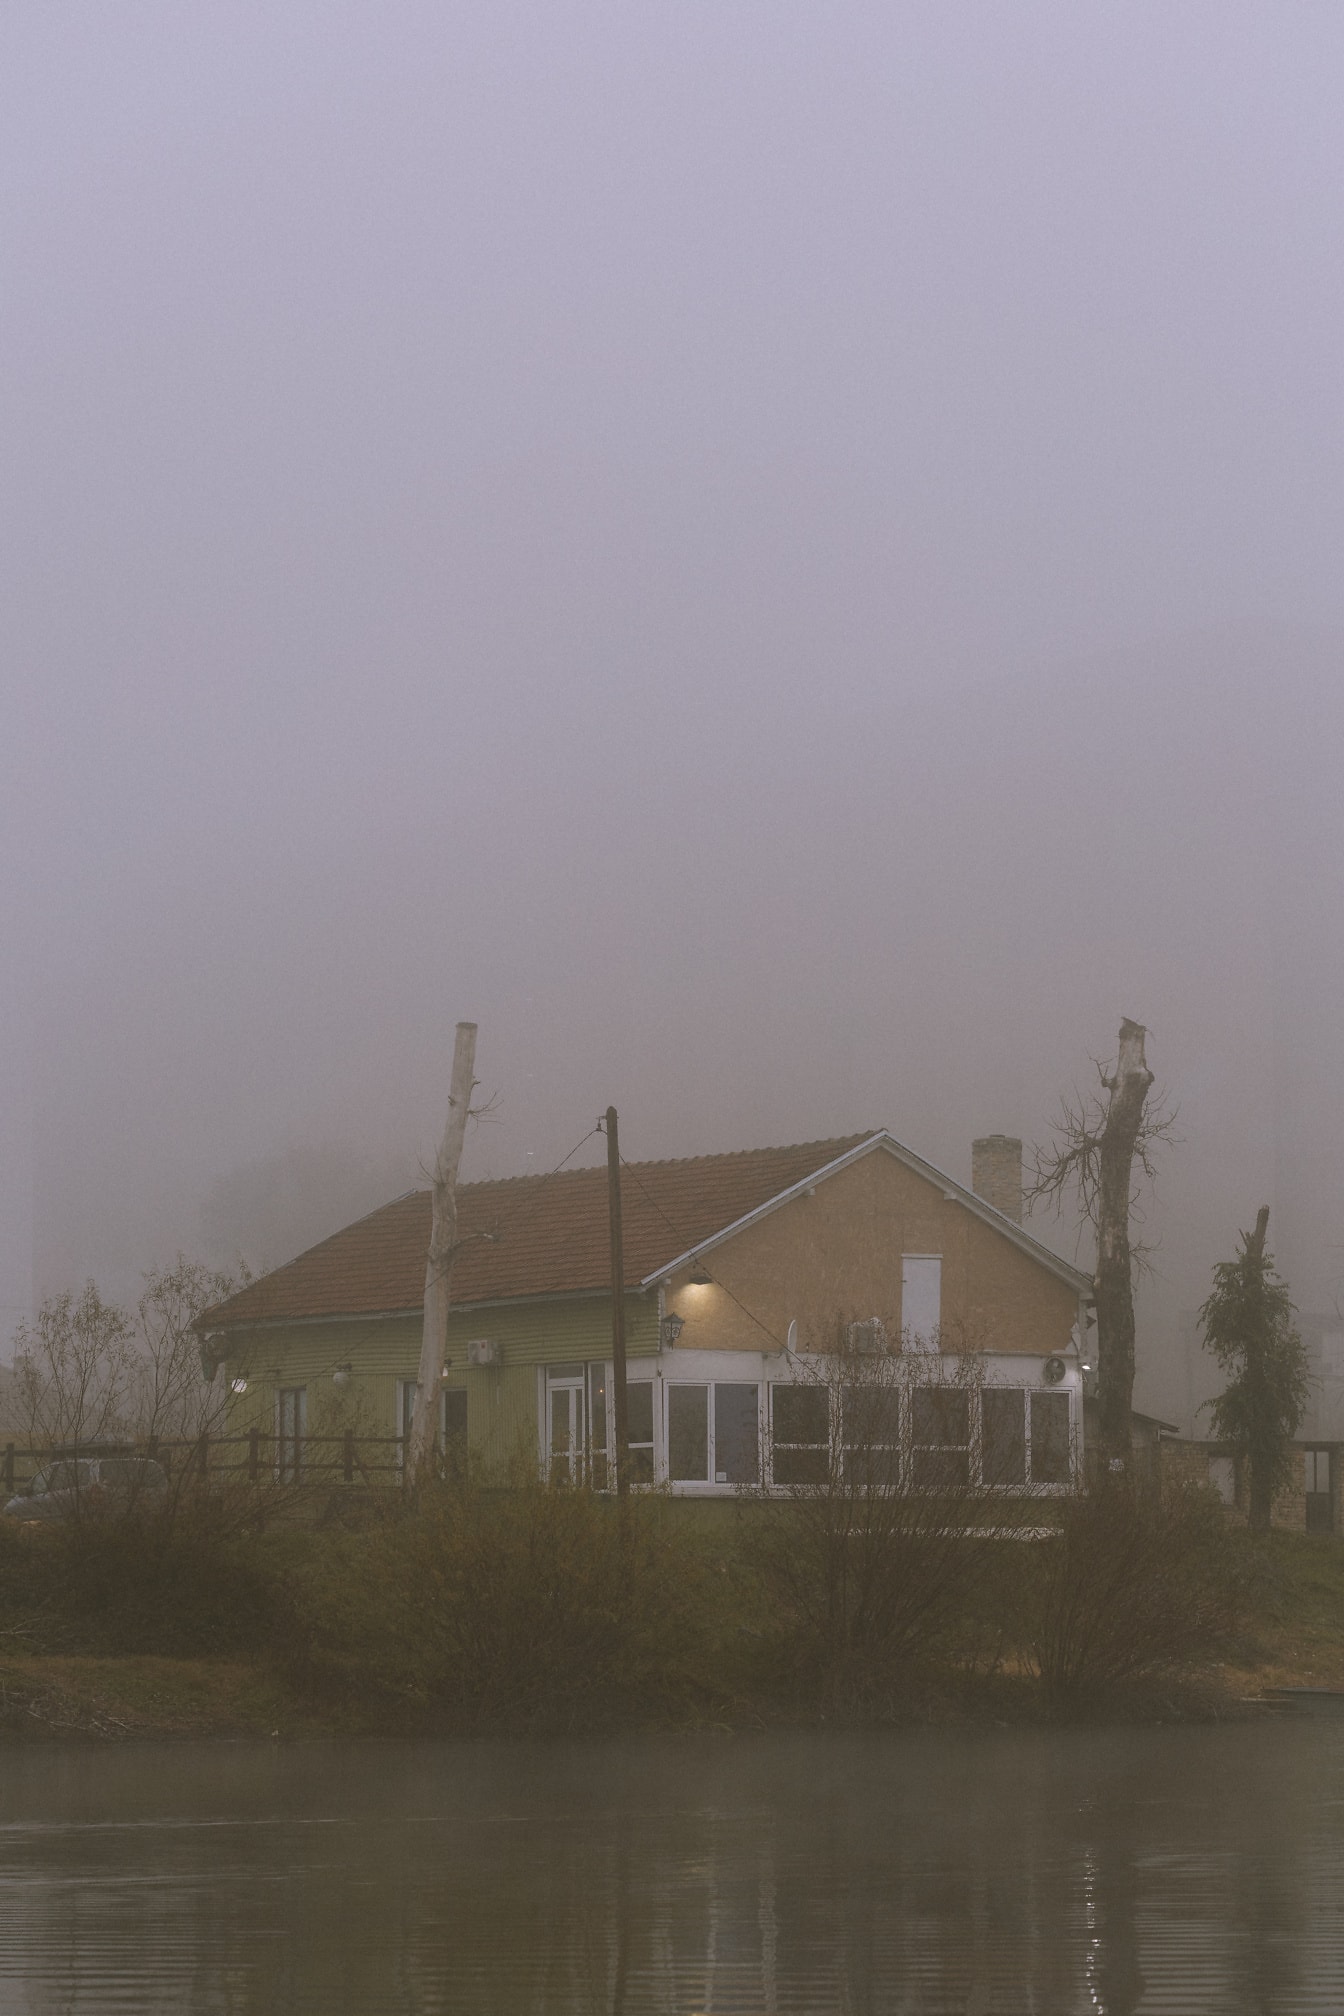 Casa in nebbia densa con alberi sullo sfondo